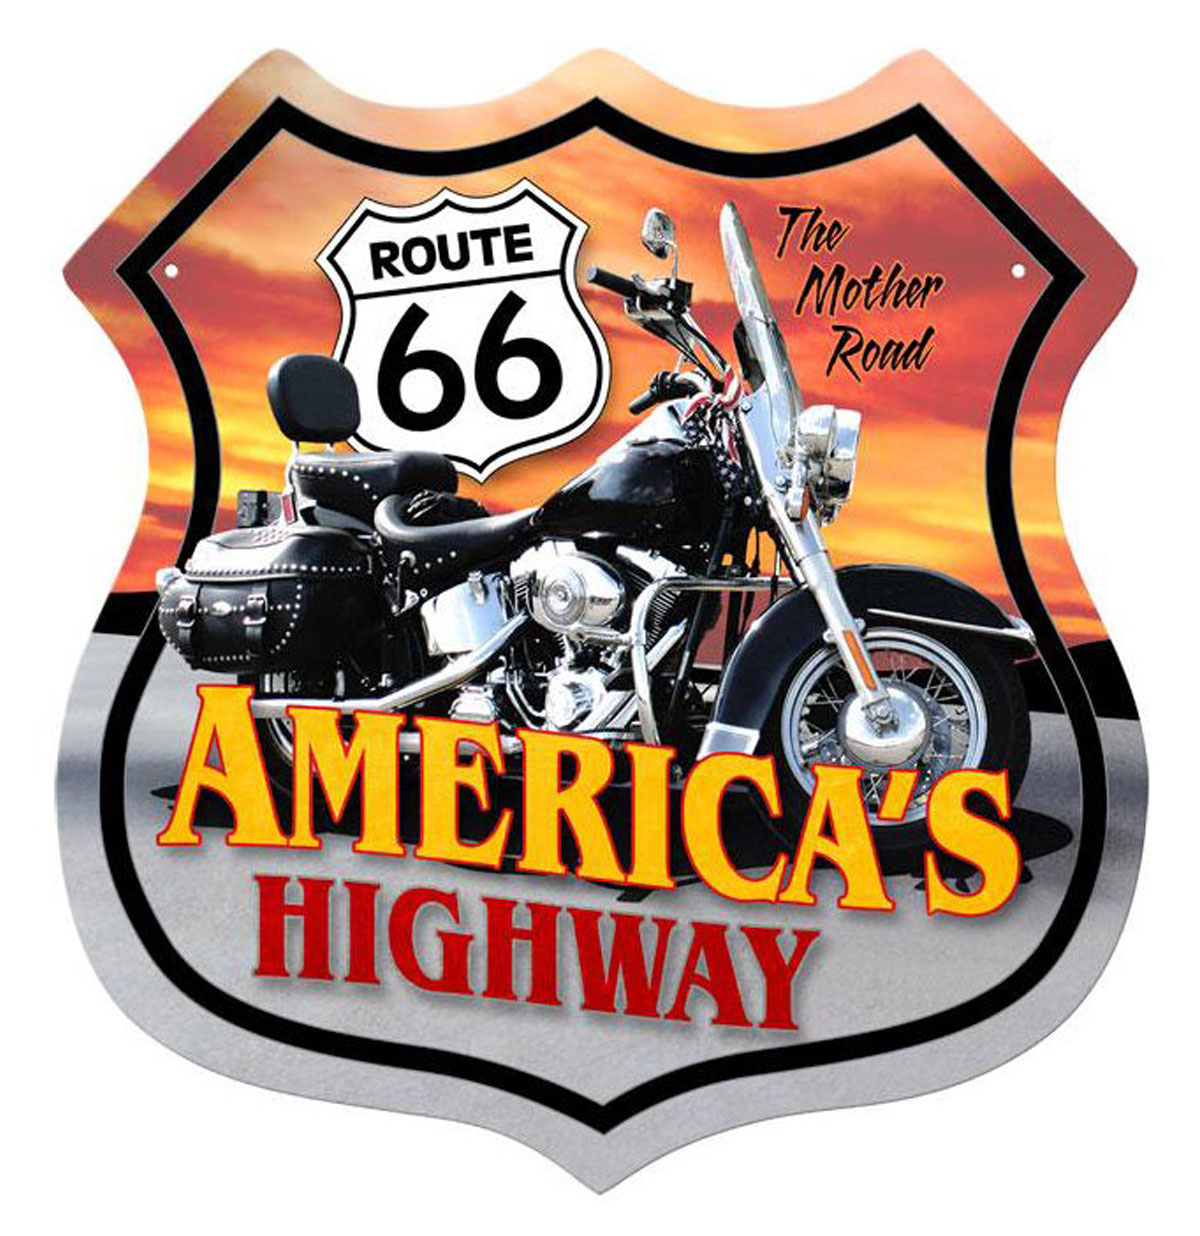 Route 66 America's Highway Motorcycle Zwaar Metalen Bord